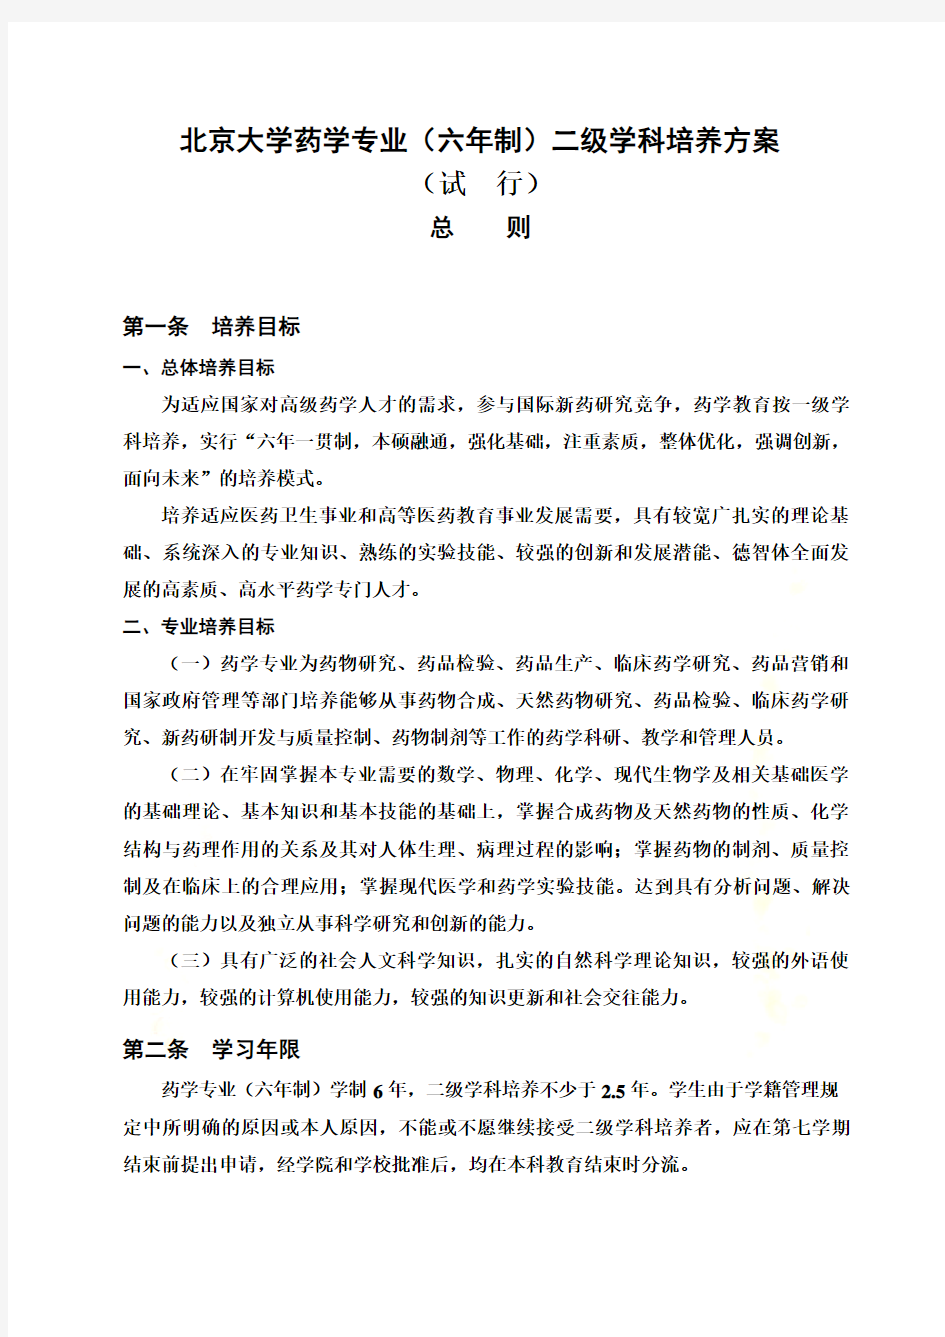 北京大学药学专业(六年制)二级学科培养方案